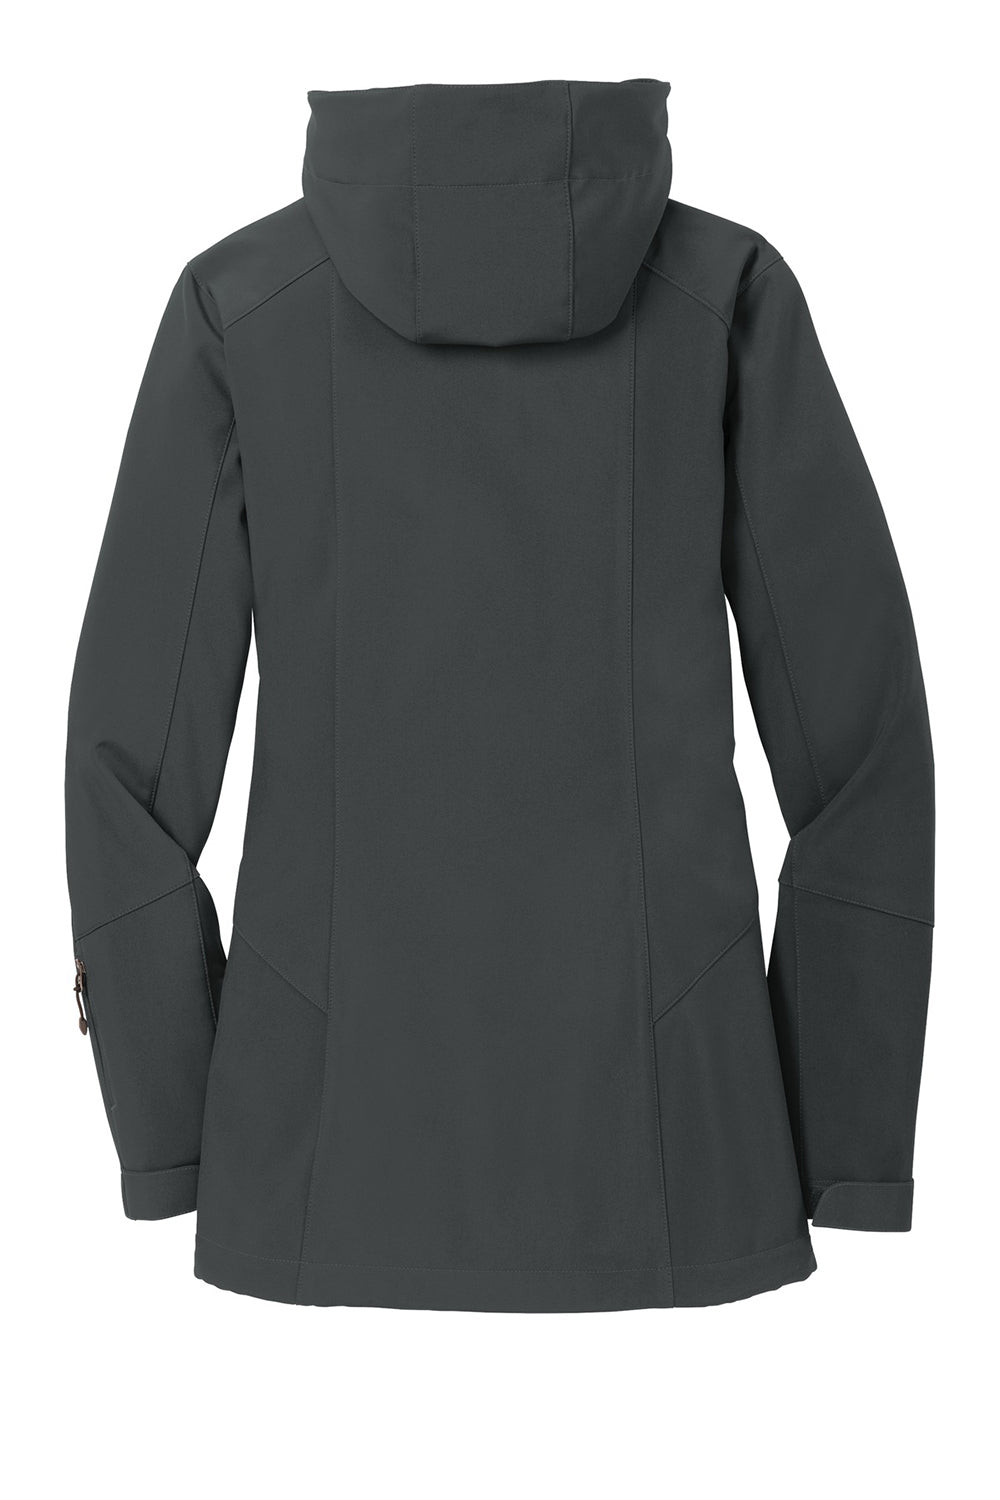 Eddie Bauer EB537 Womens Water Resistant Full Zip Hooded Jacket Steel Grey Flat Back